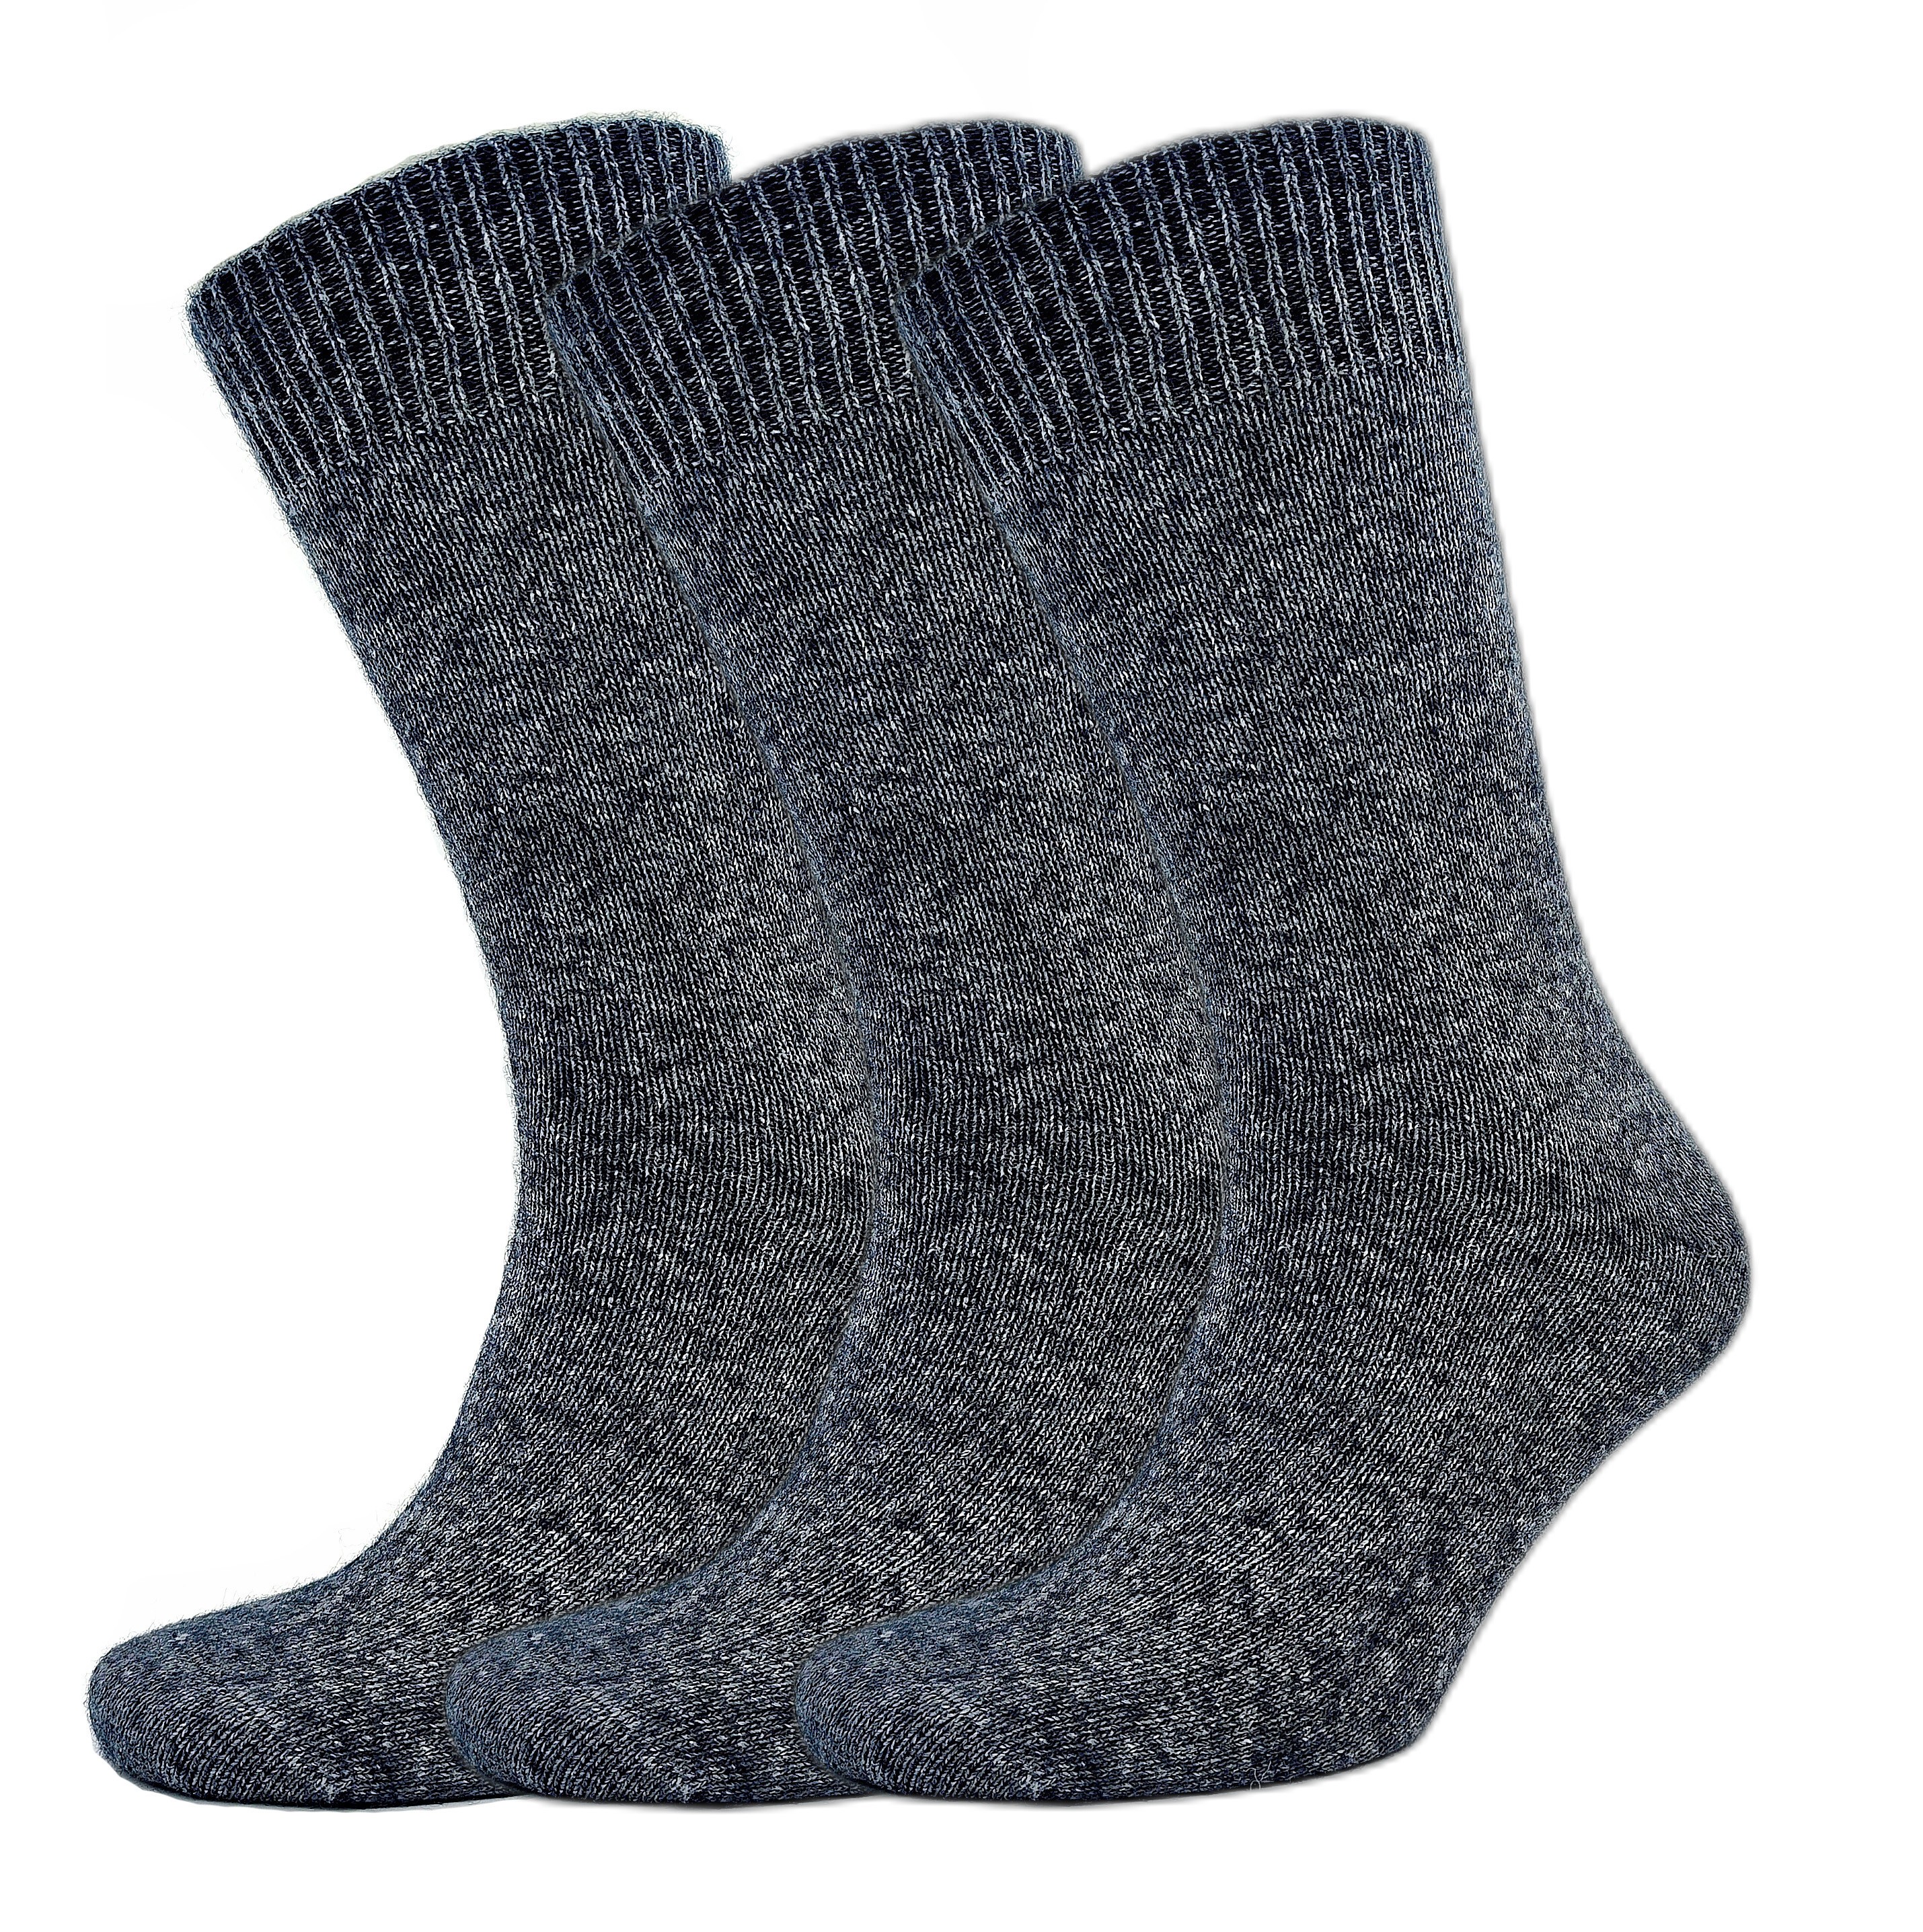 1144 Wool Dark Grey: 3 pairs